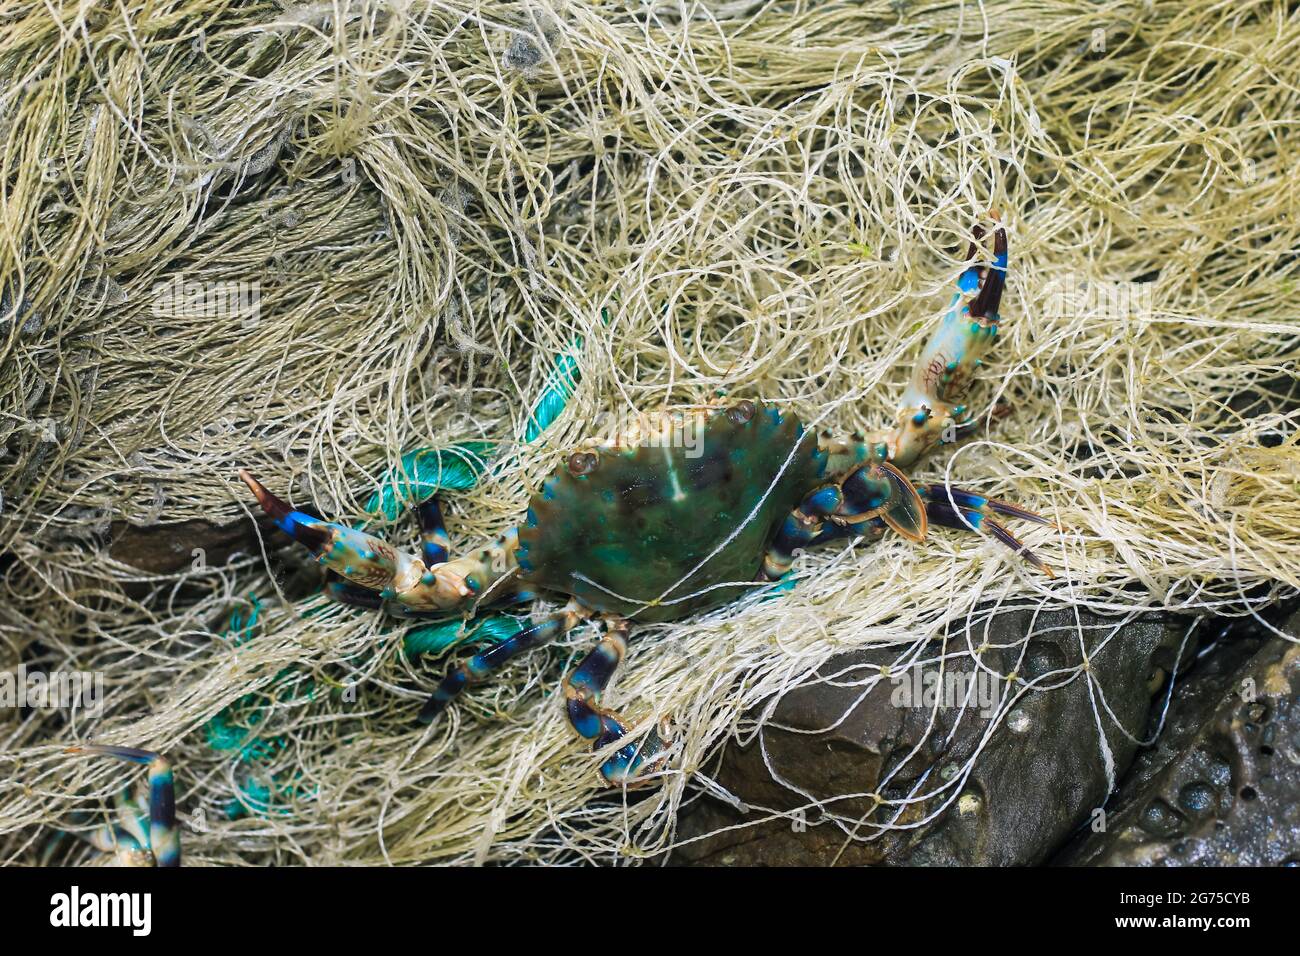 Pesca ilegal, cangrejo azul, pesca de cangrejo en la red. Cangrejos capturados en un desfile que los pescadores capturaron. Un cangrejo es capturado por la red. Foto de stock